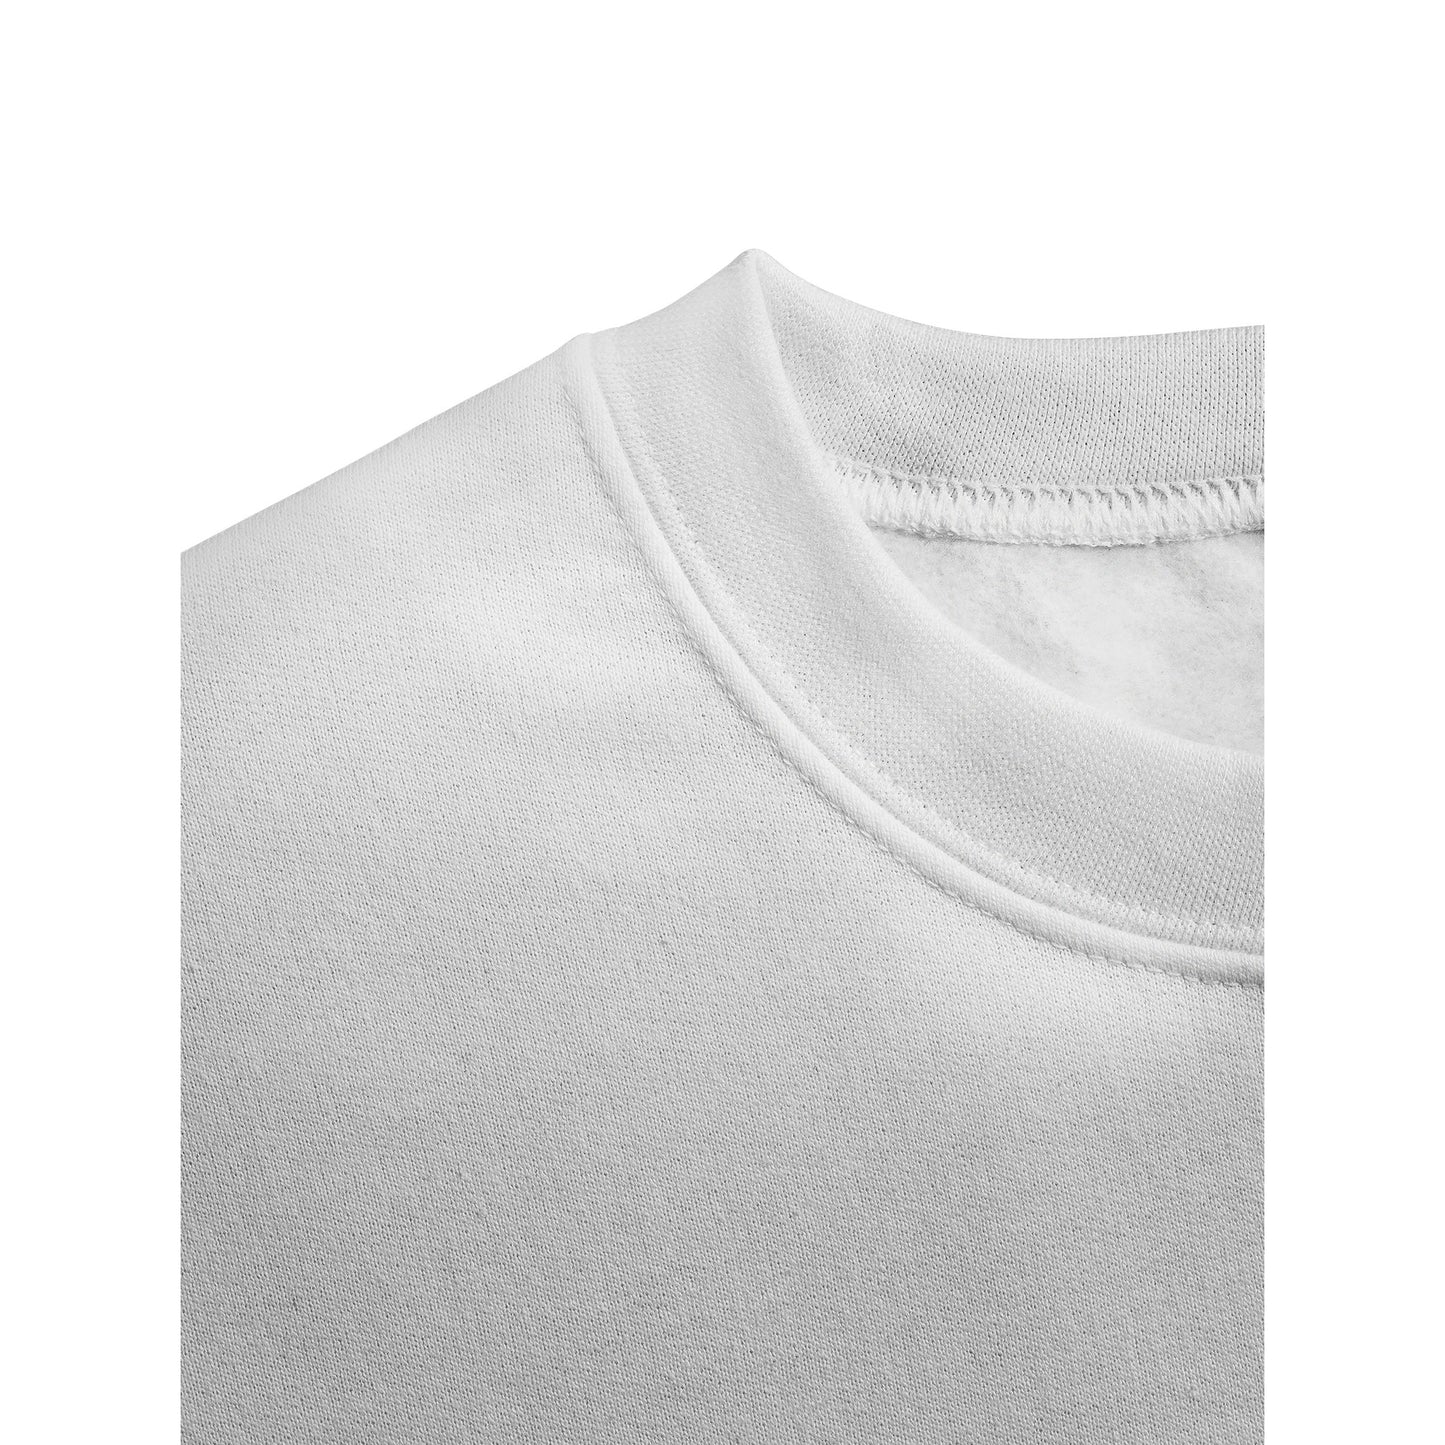 distortion / Gallery Staff Collection / Sweatshirt / white